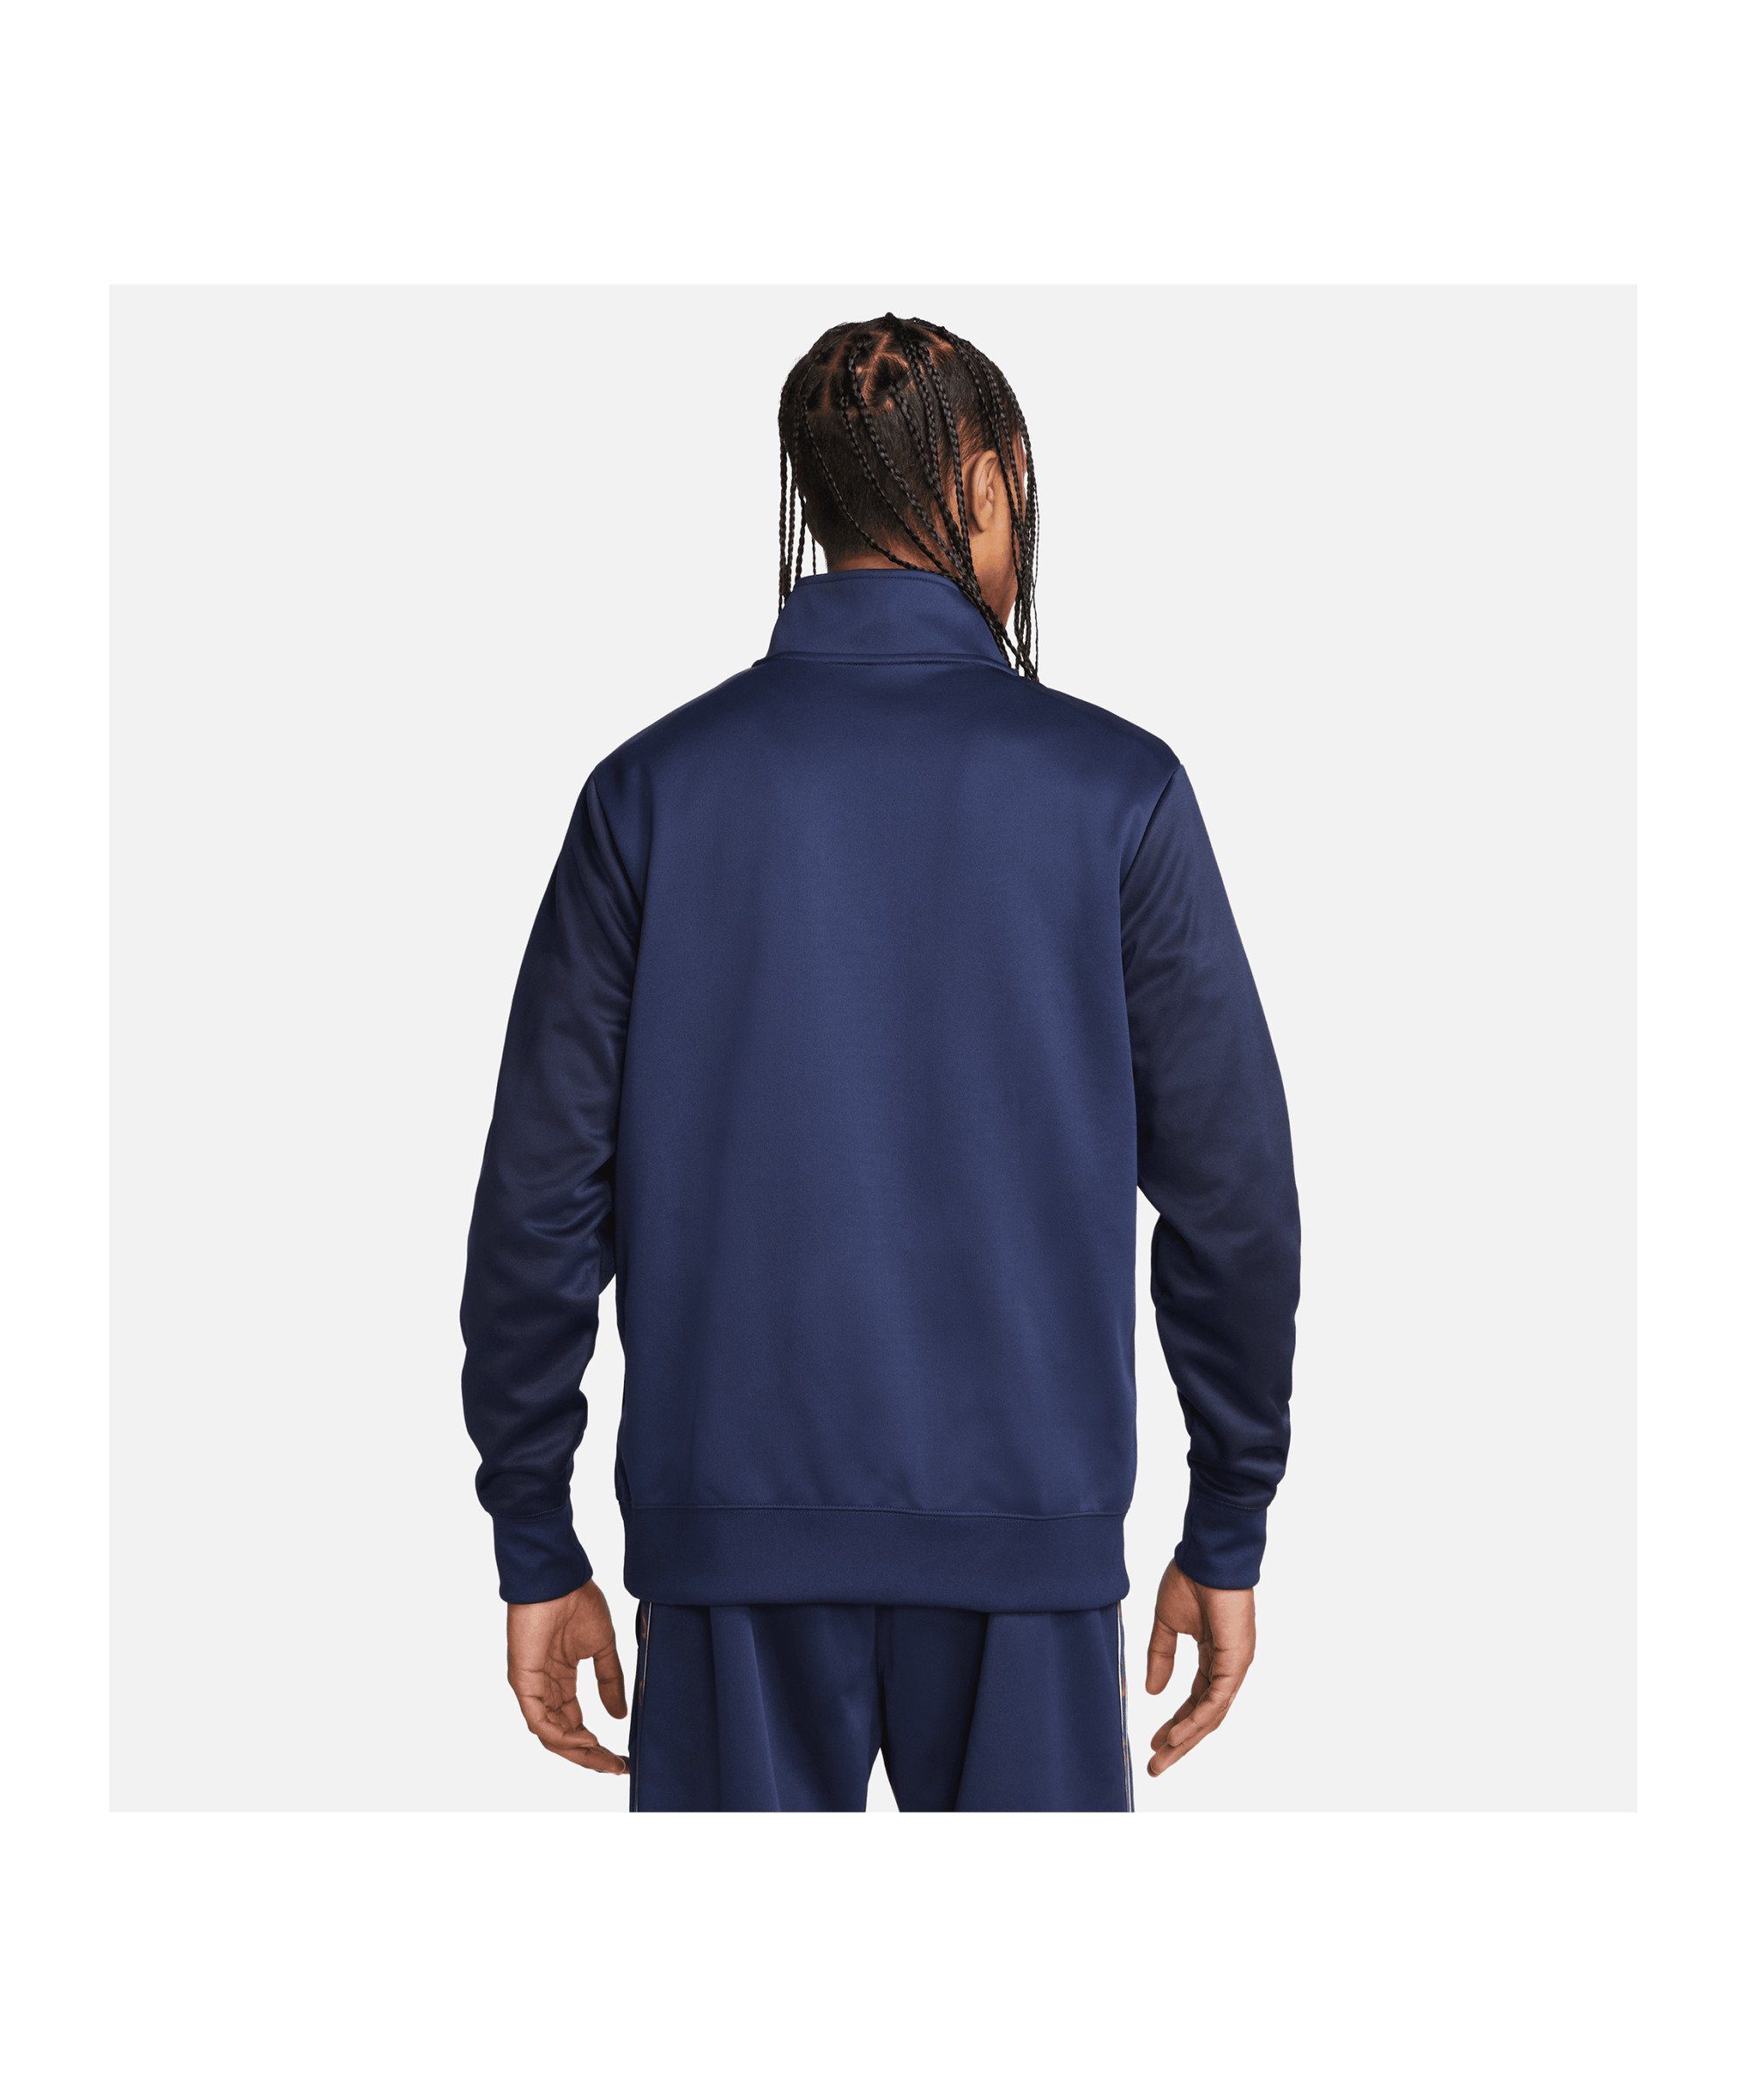 Nike blaublaurot Sweatshirt Sportswear Sweatshirt Repeat HalfZip